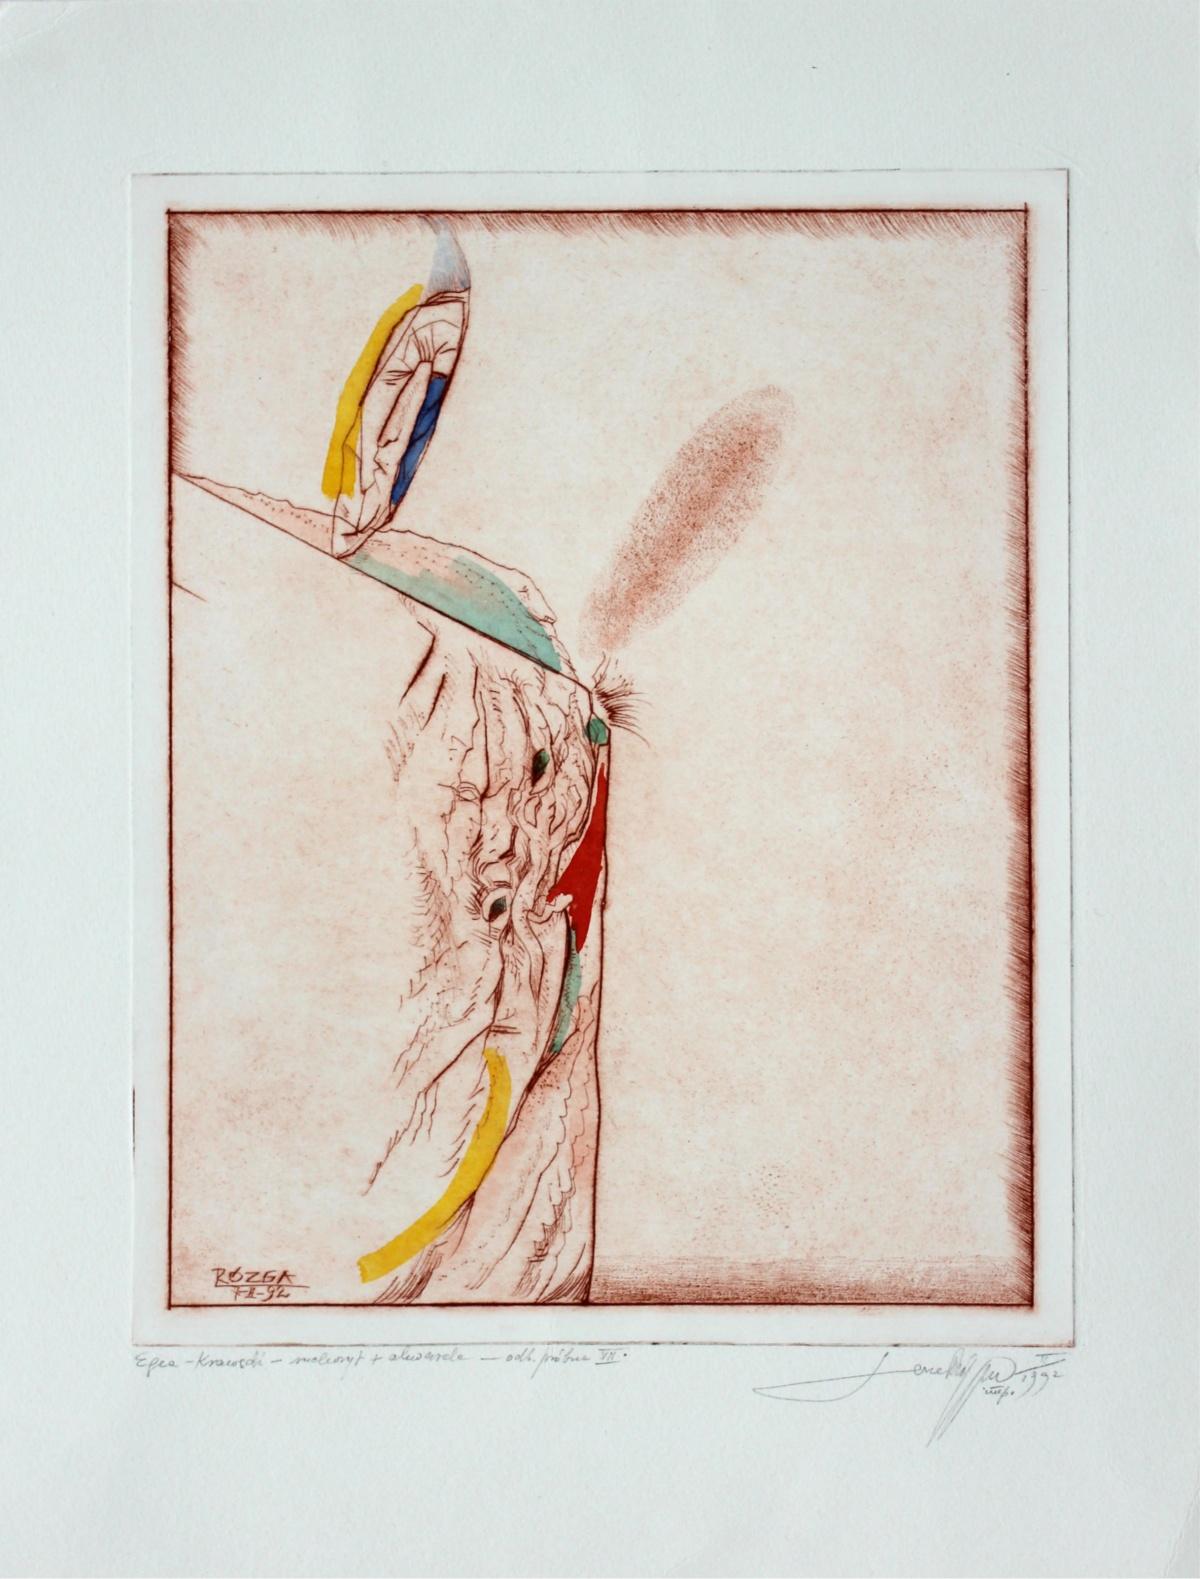 Egea, un bord - XXe siècle, gravure à l'eau-forte abstraite, colorée - Print de Leszek Rózga